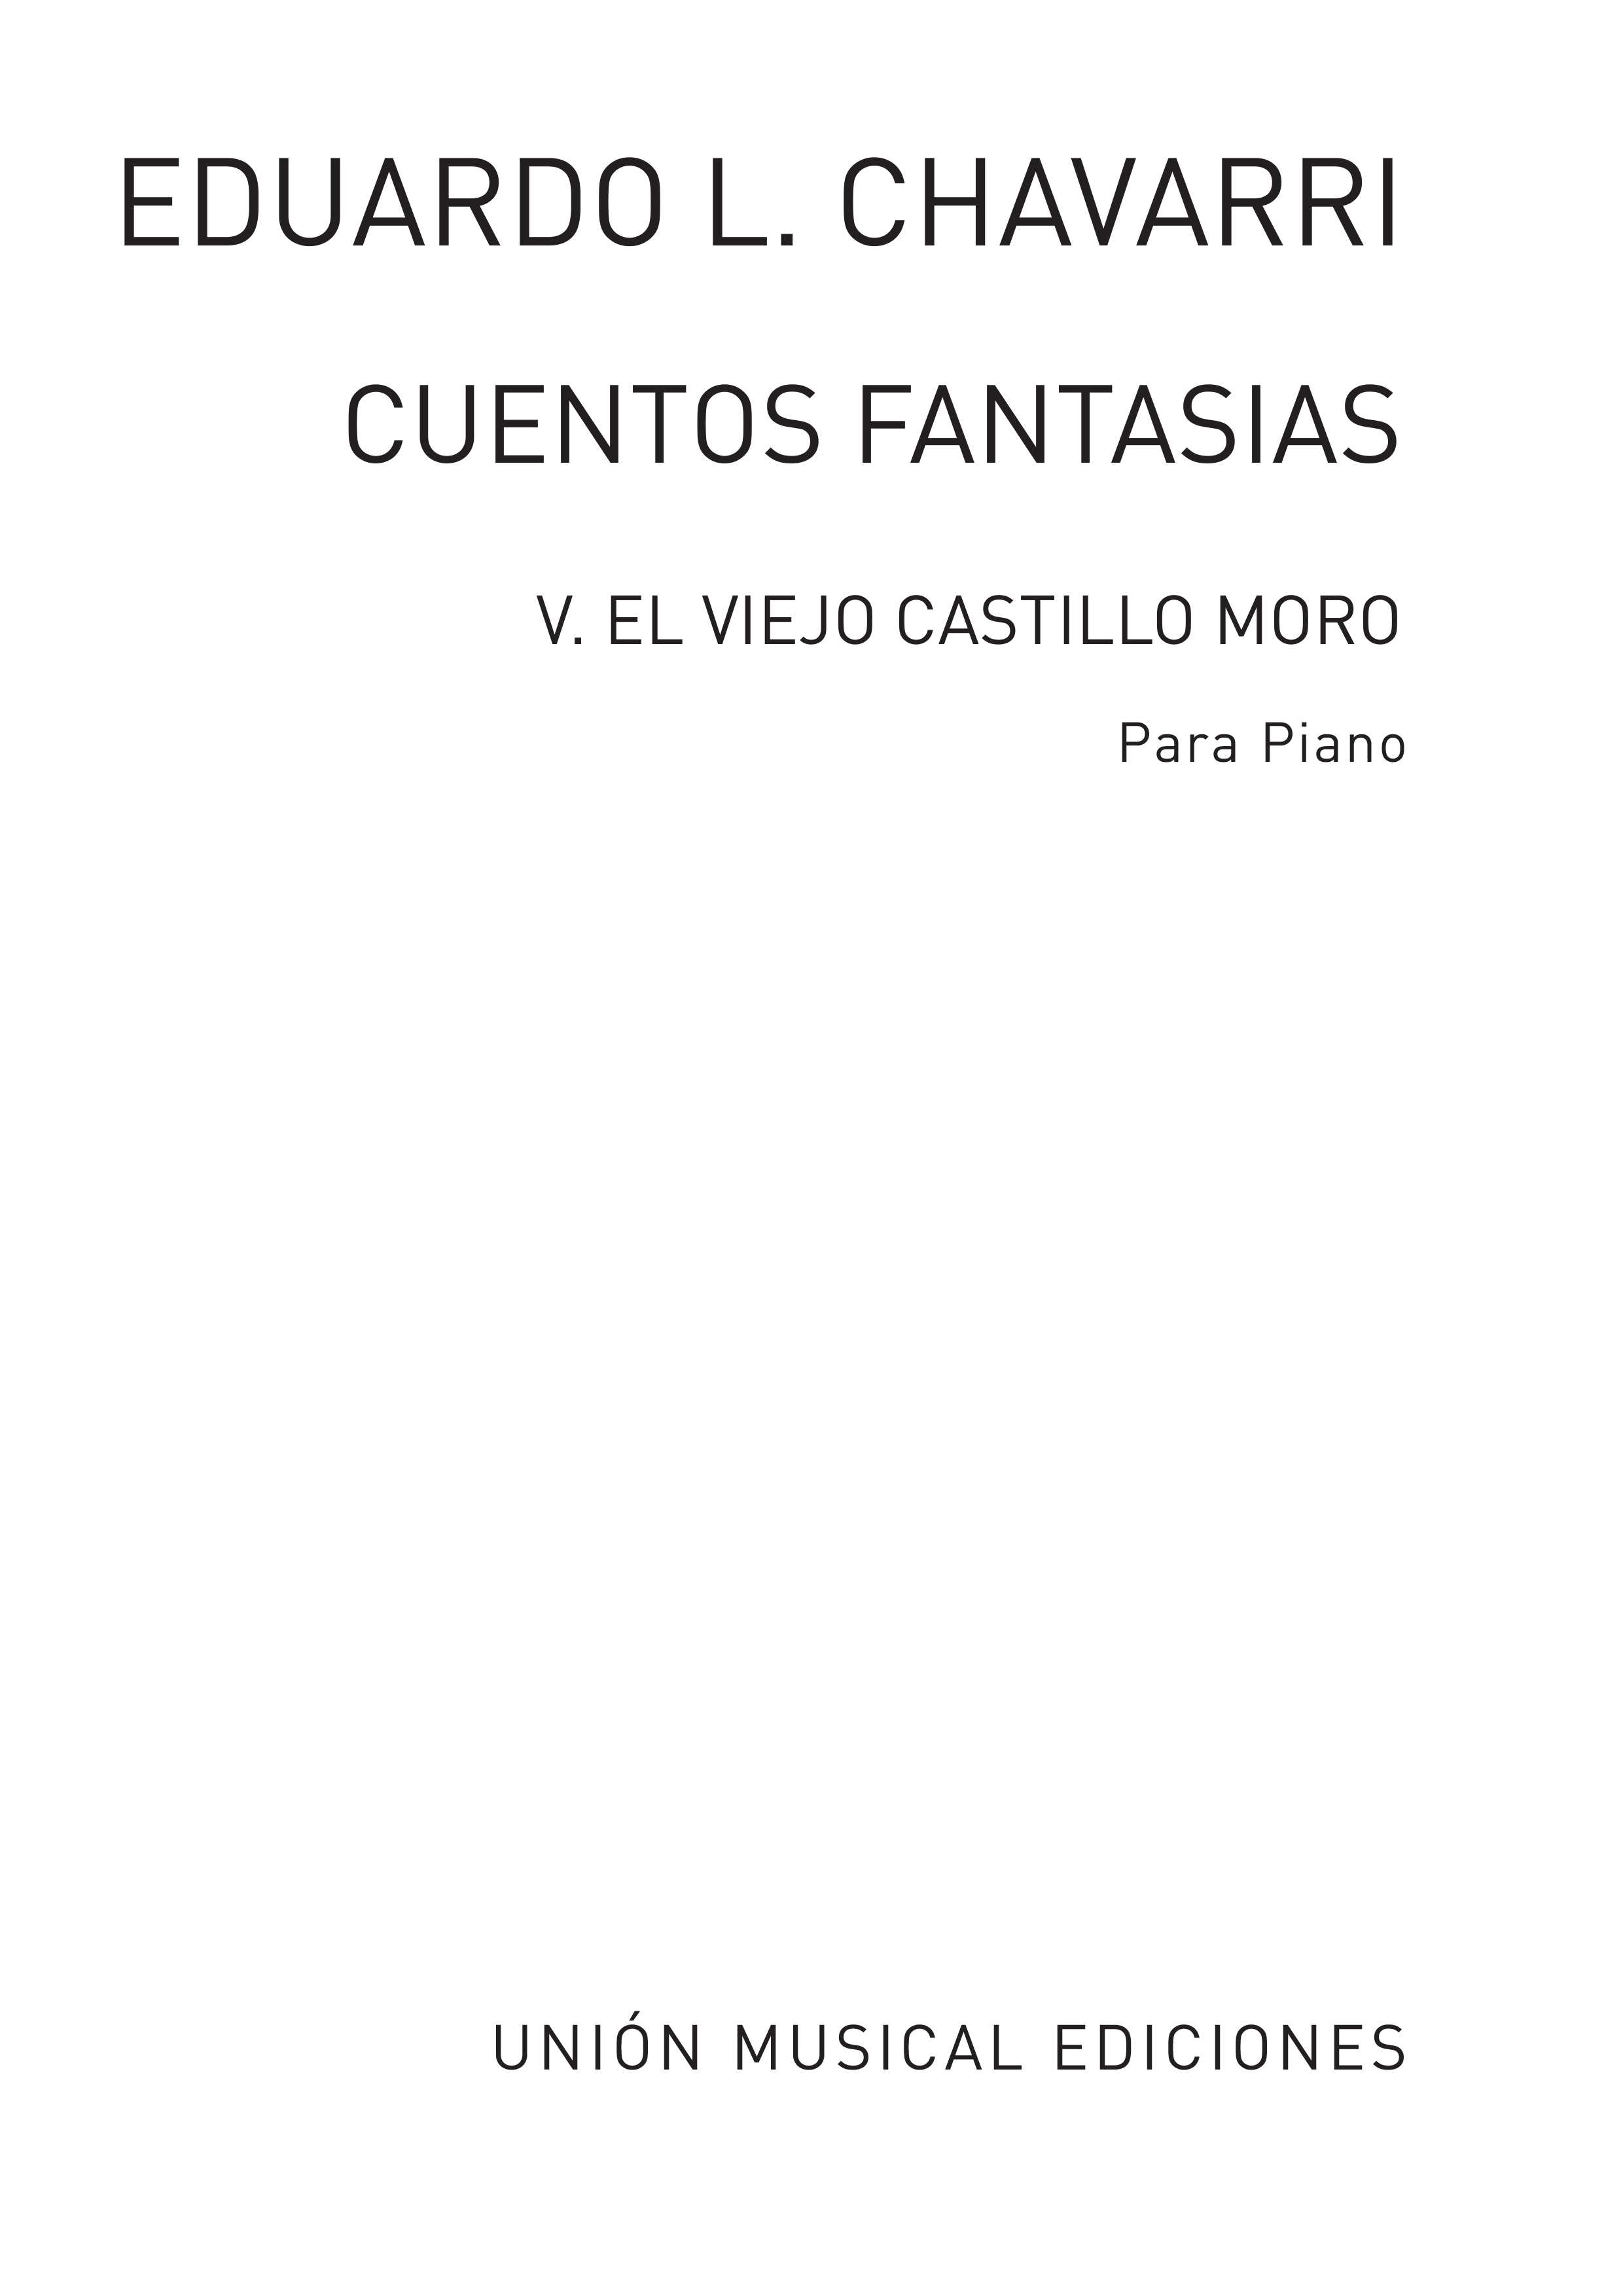 Eduardo Lopez-Chavarri: Cuentos Y Fantasias Num 5 El Viejo Castillo Moro: Piano: